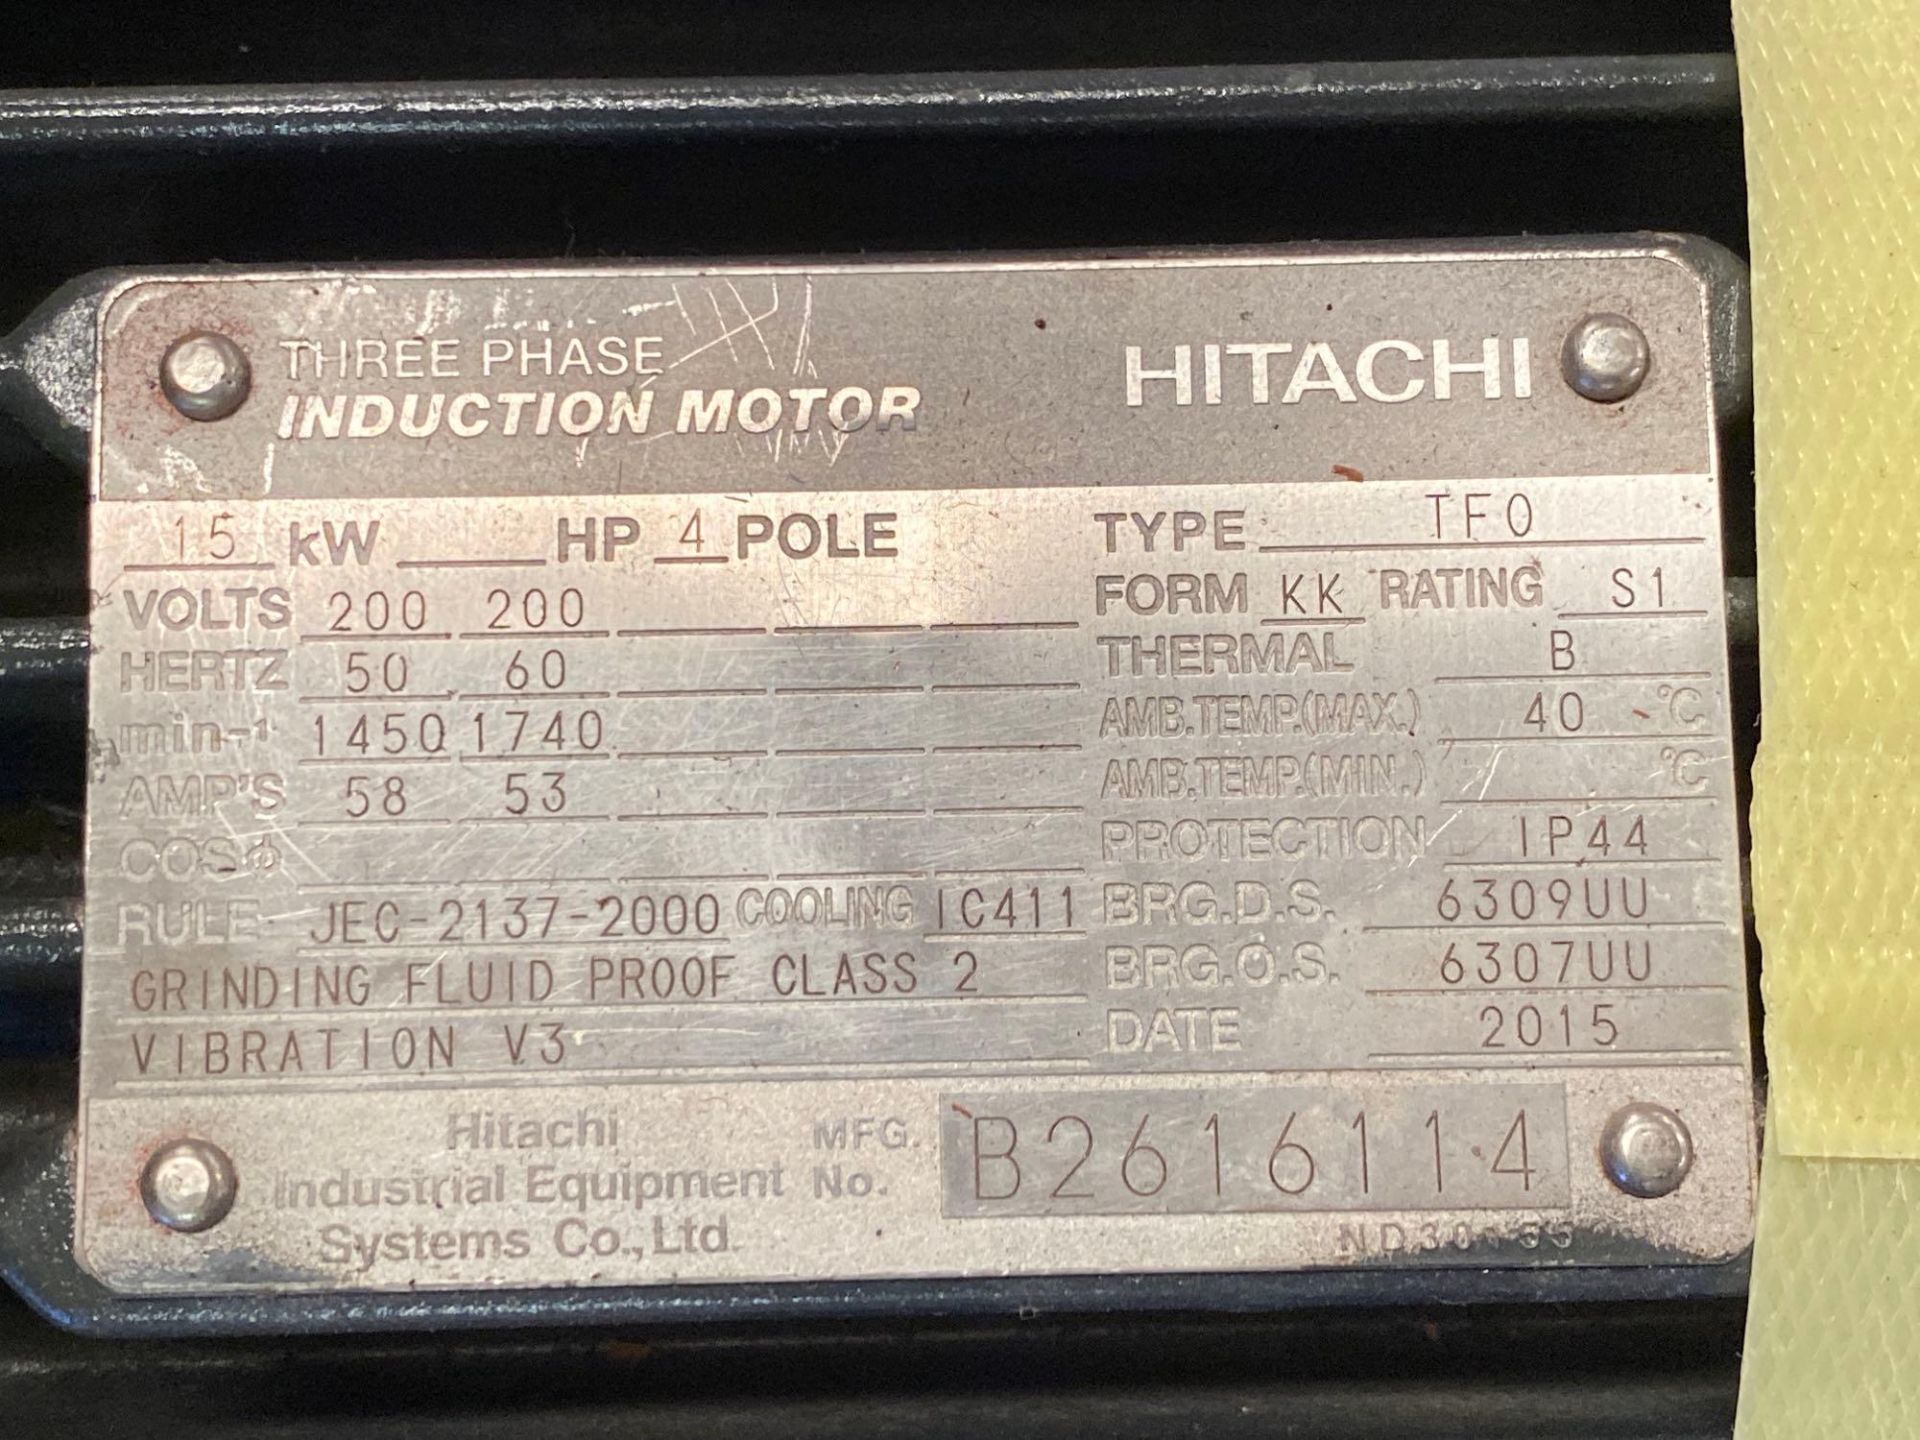 NEW Hitachi Induction 3 Phase Motor - Image 3 of 4